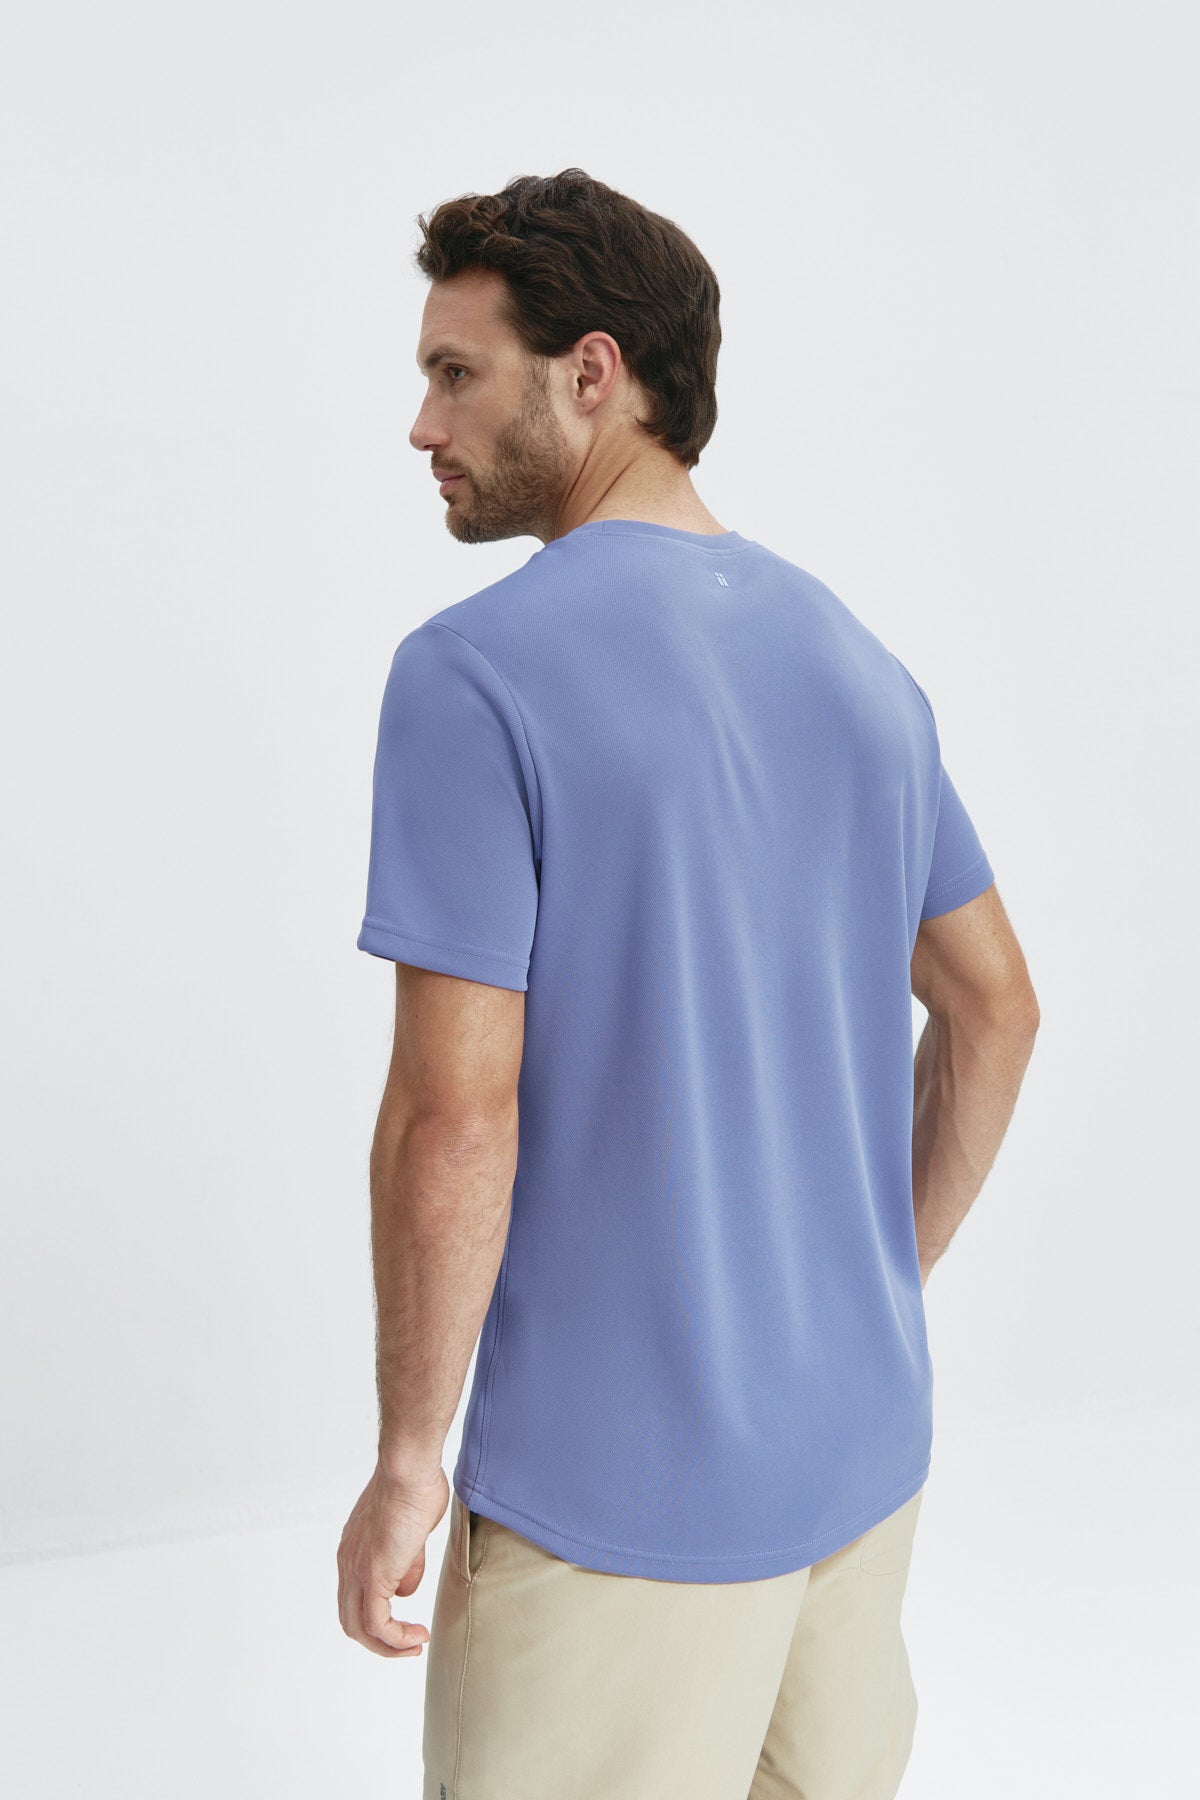 Camiseta de hombre en lavanda de Sepiia, suave y cómoda, perfecta para cualquier ocasión. Foto espalda